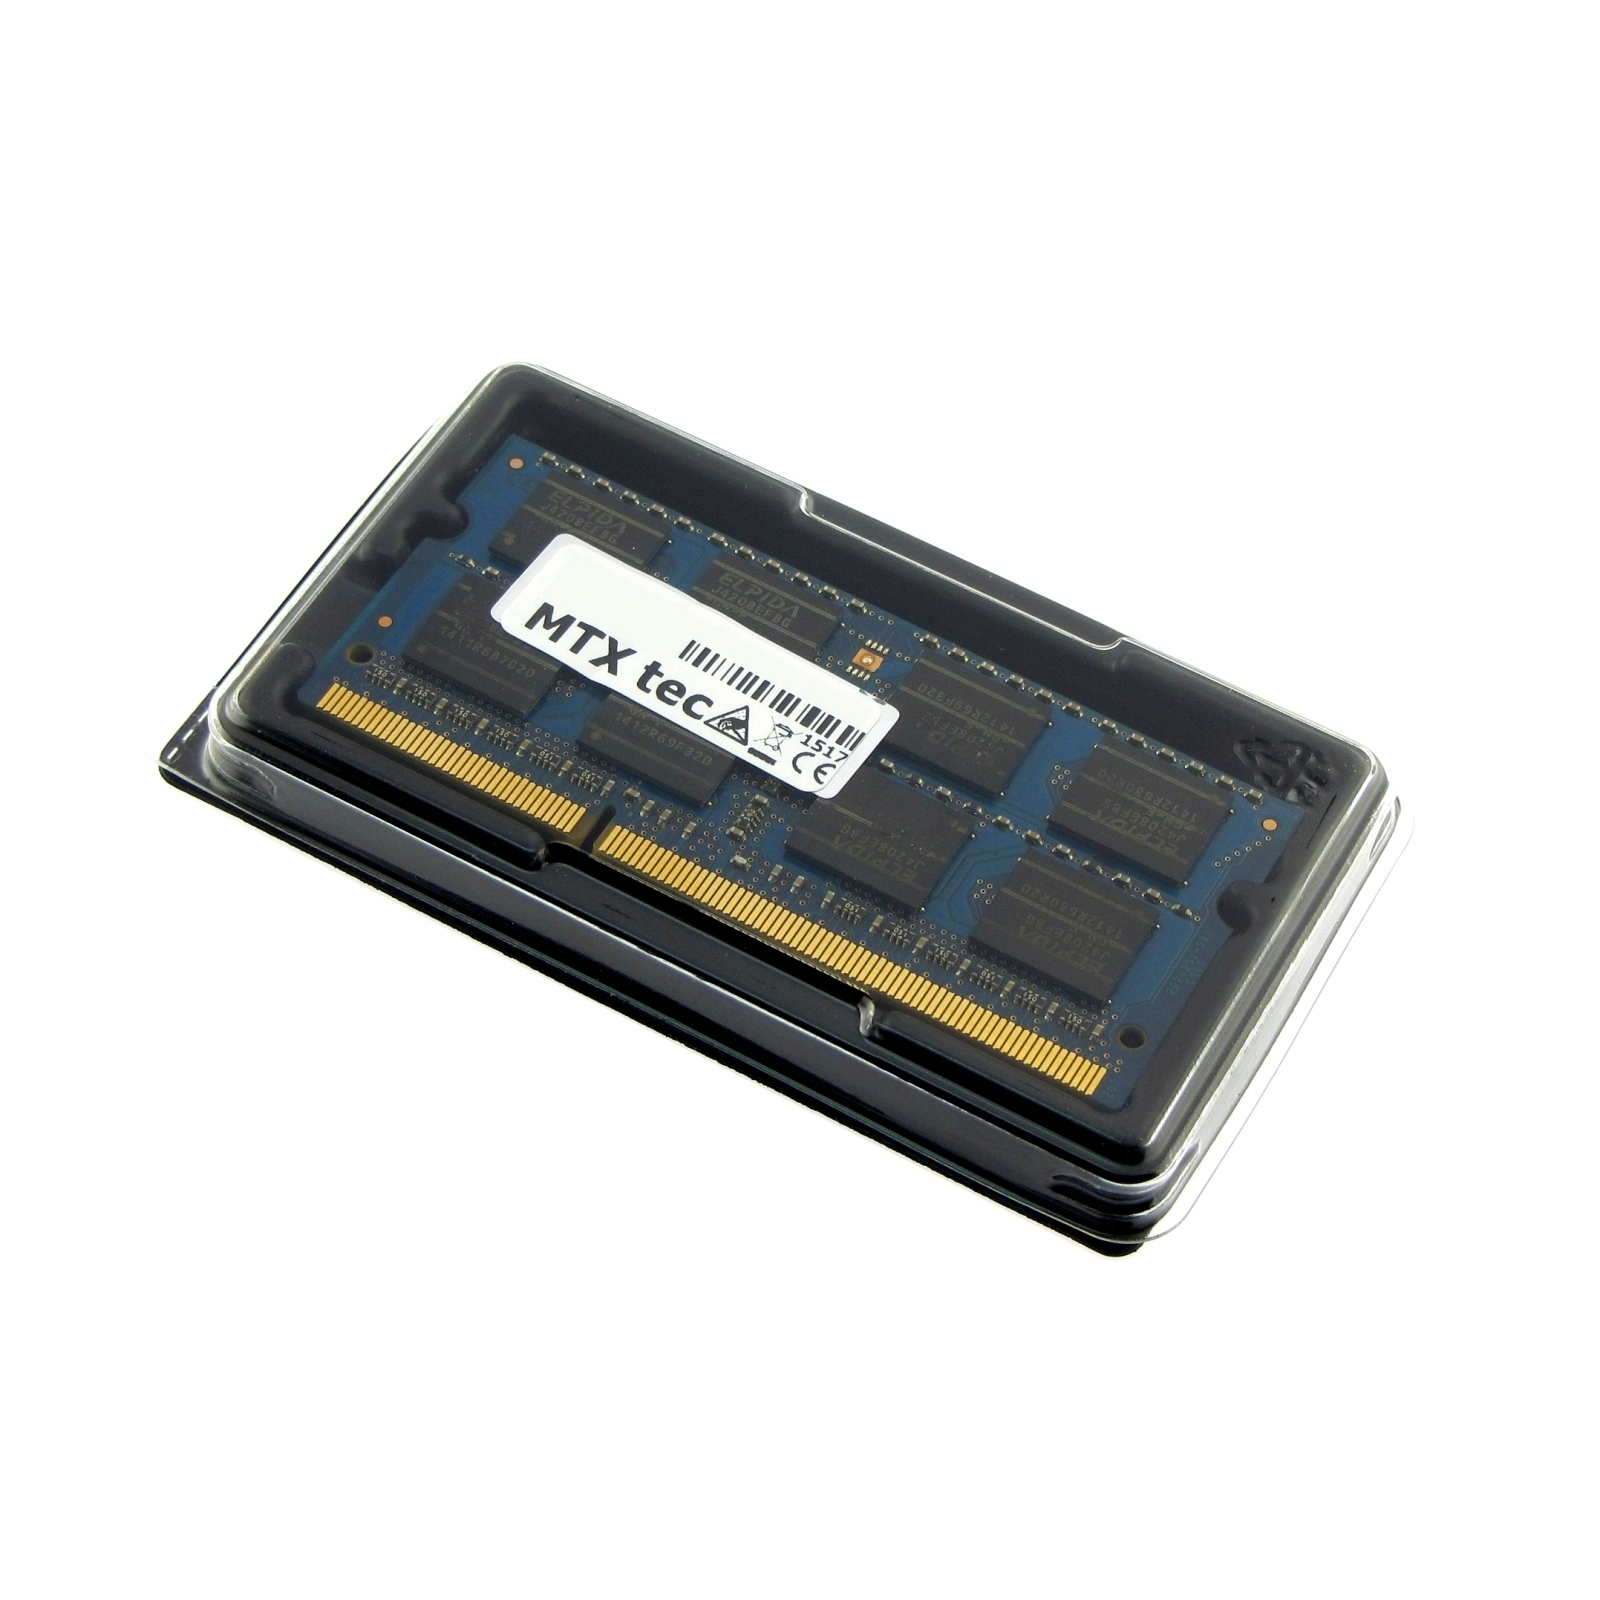 für Notebook-Speicher Arbeitsspeicher TOSHIBA L755D-12U RAM Satellite MTXTEC 2 GB GB DDR3 2